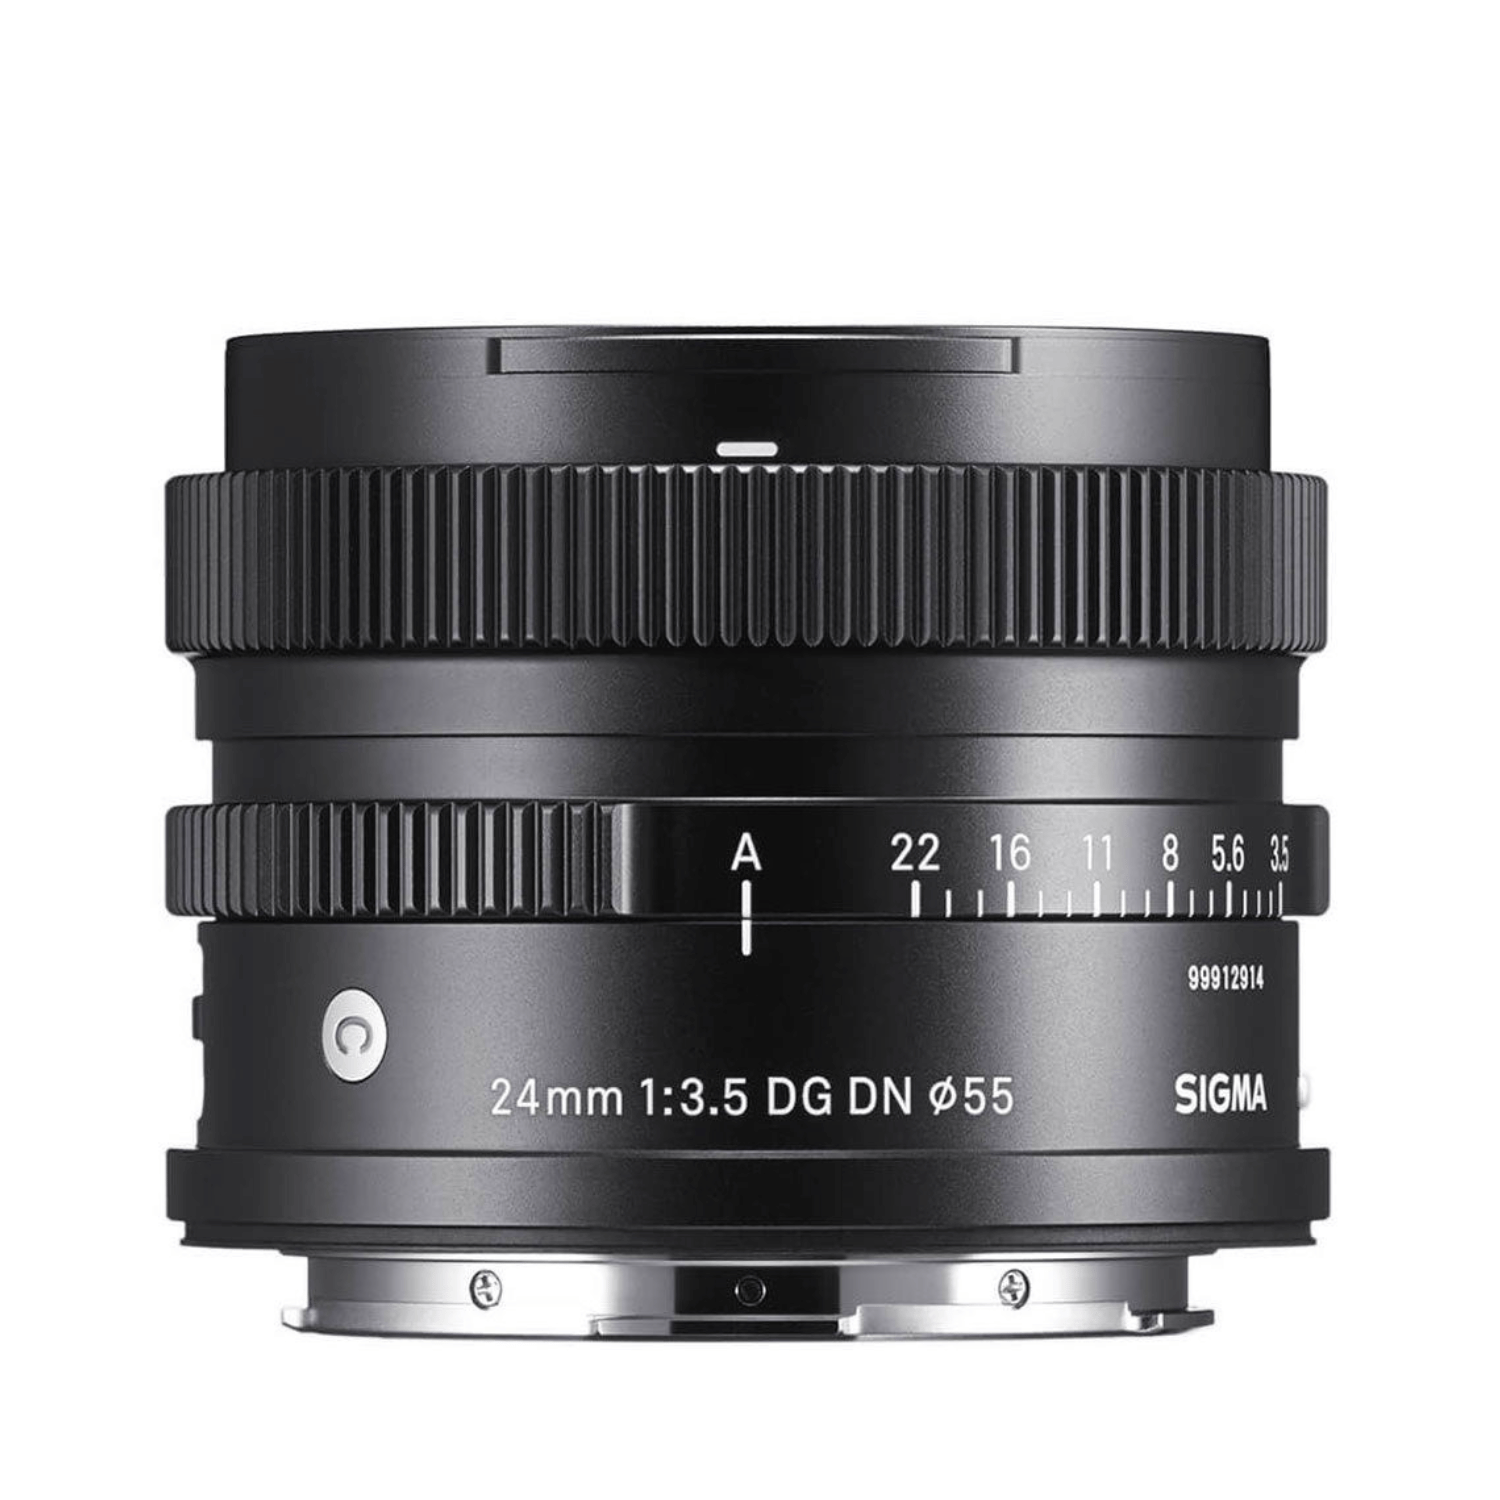 Sigma 24mm F3.5 DG DN per Leica L-mount - Garanzia M-trading 3 anni- Cine Sud è sul mercato da 48 anni! 6030130